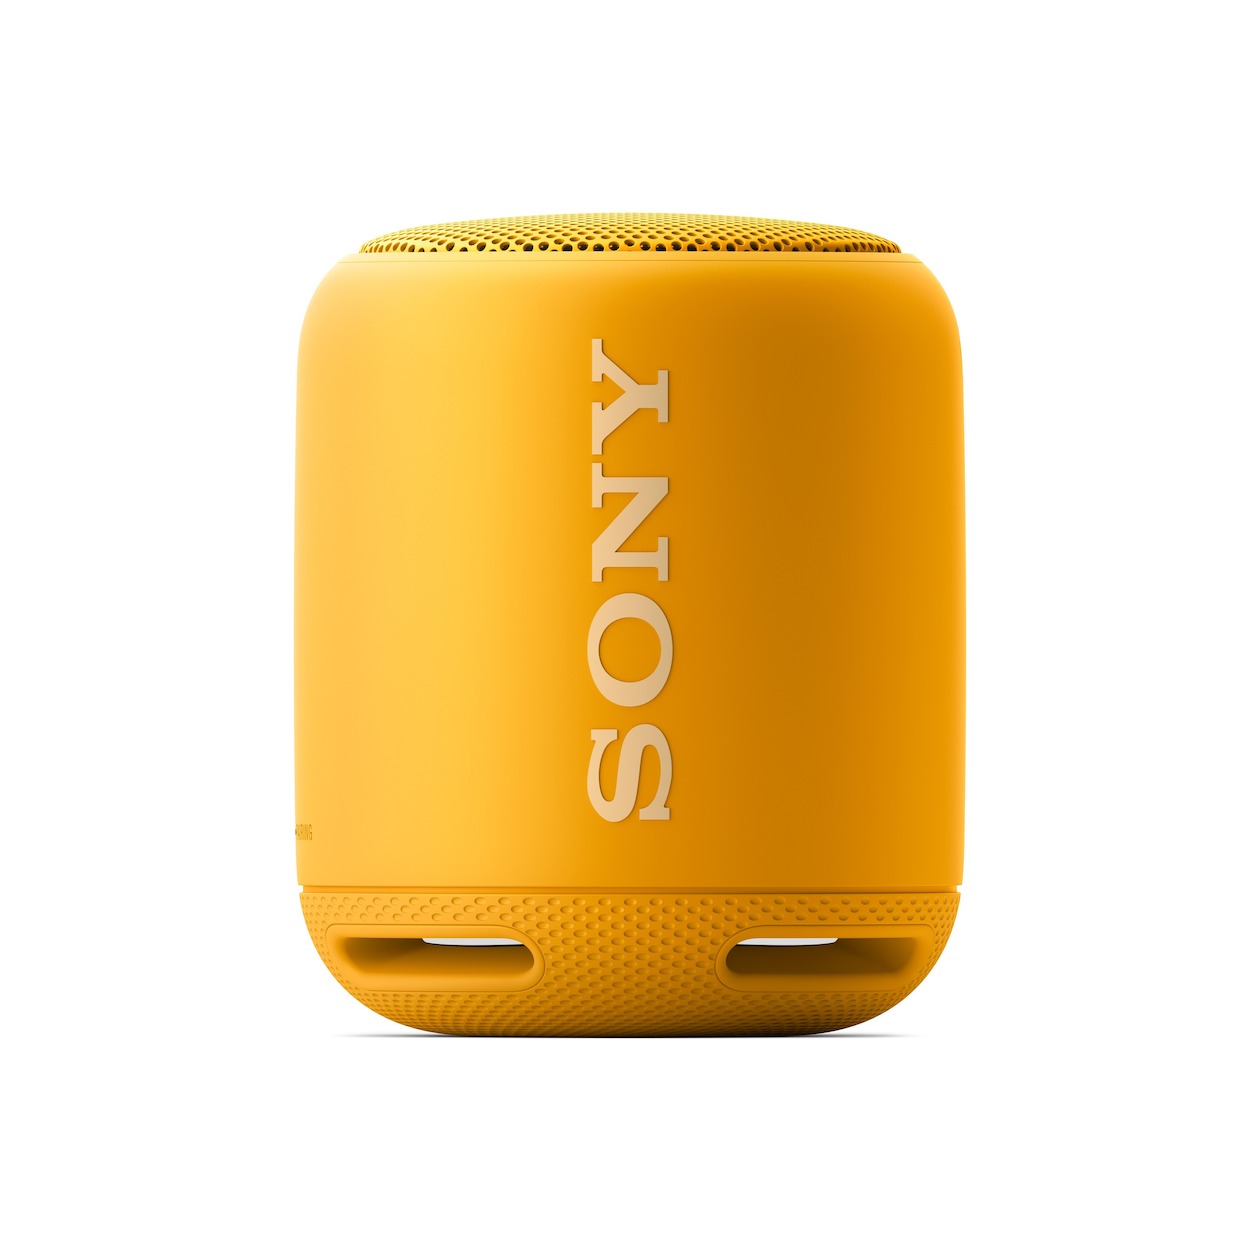 Telefoonleader - Sony SRS-XB10 geel